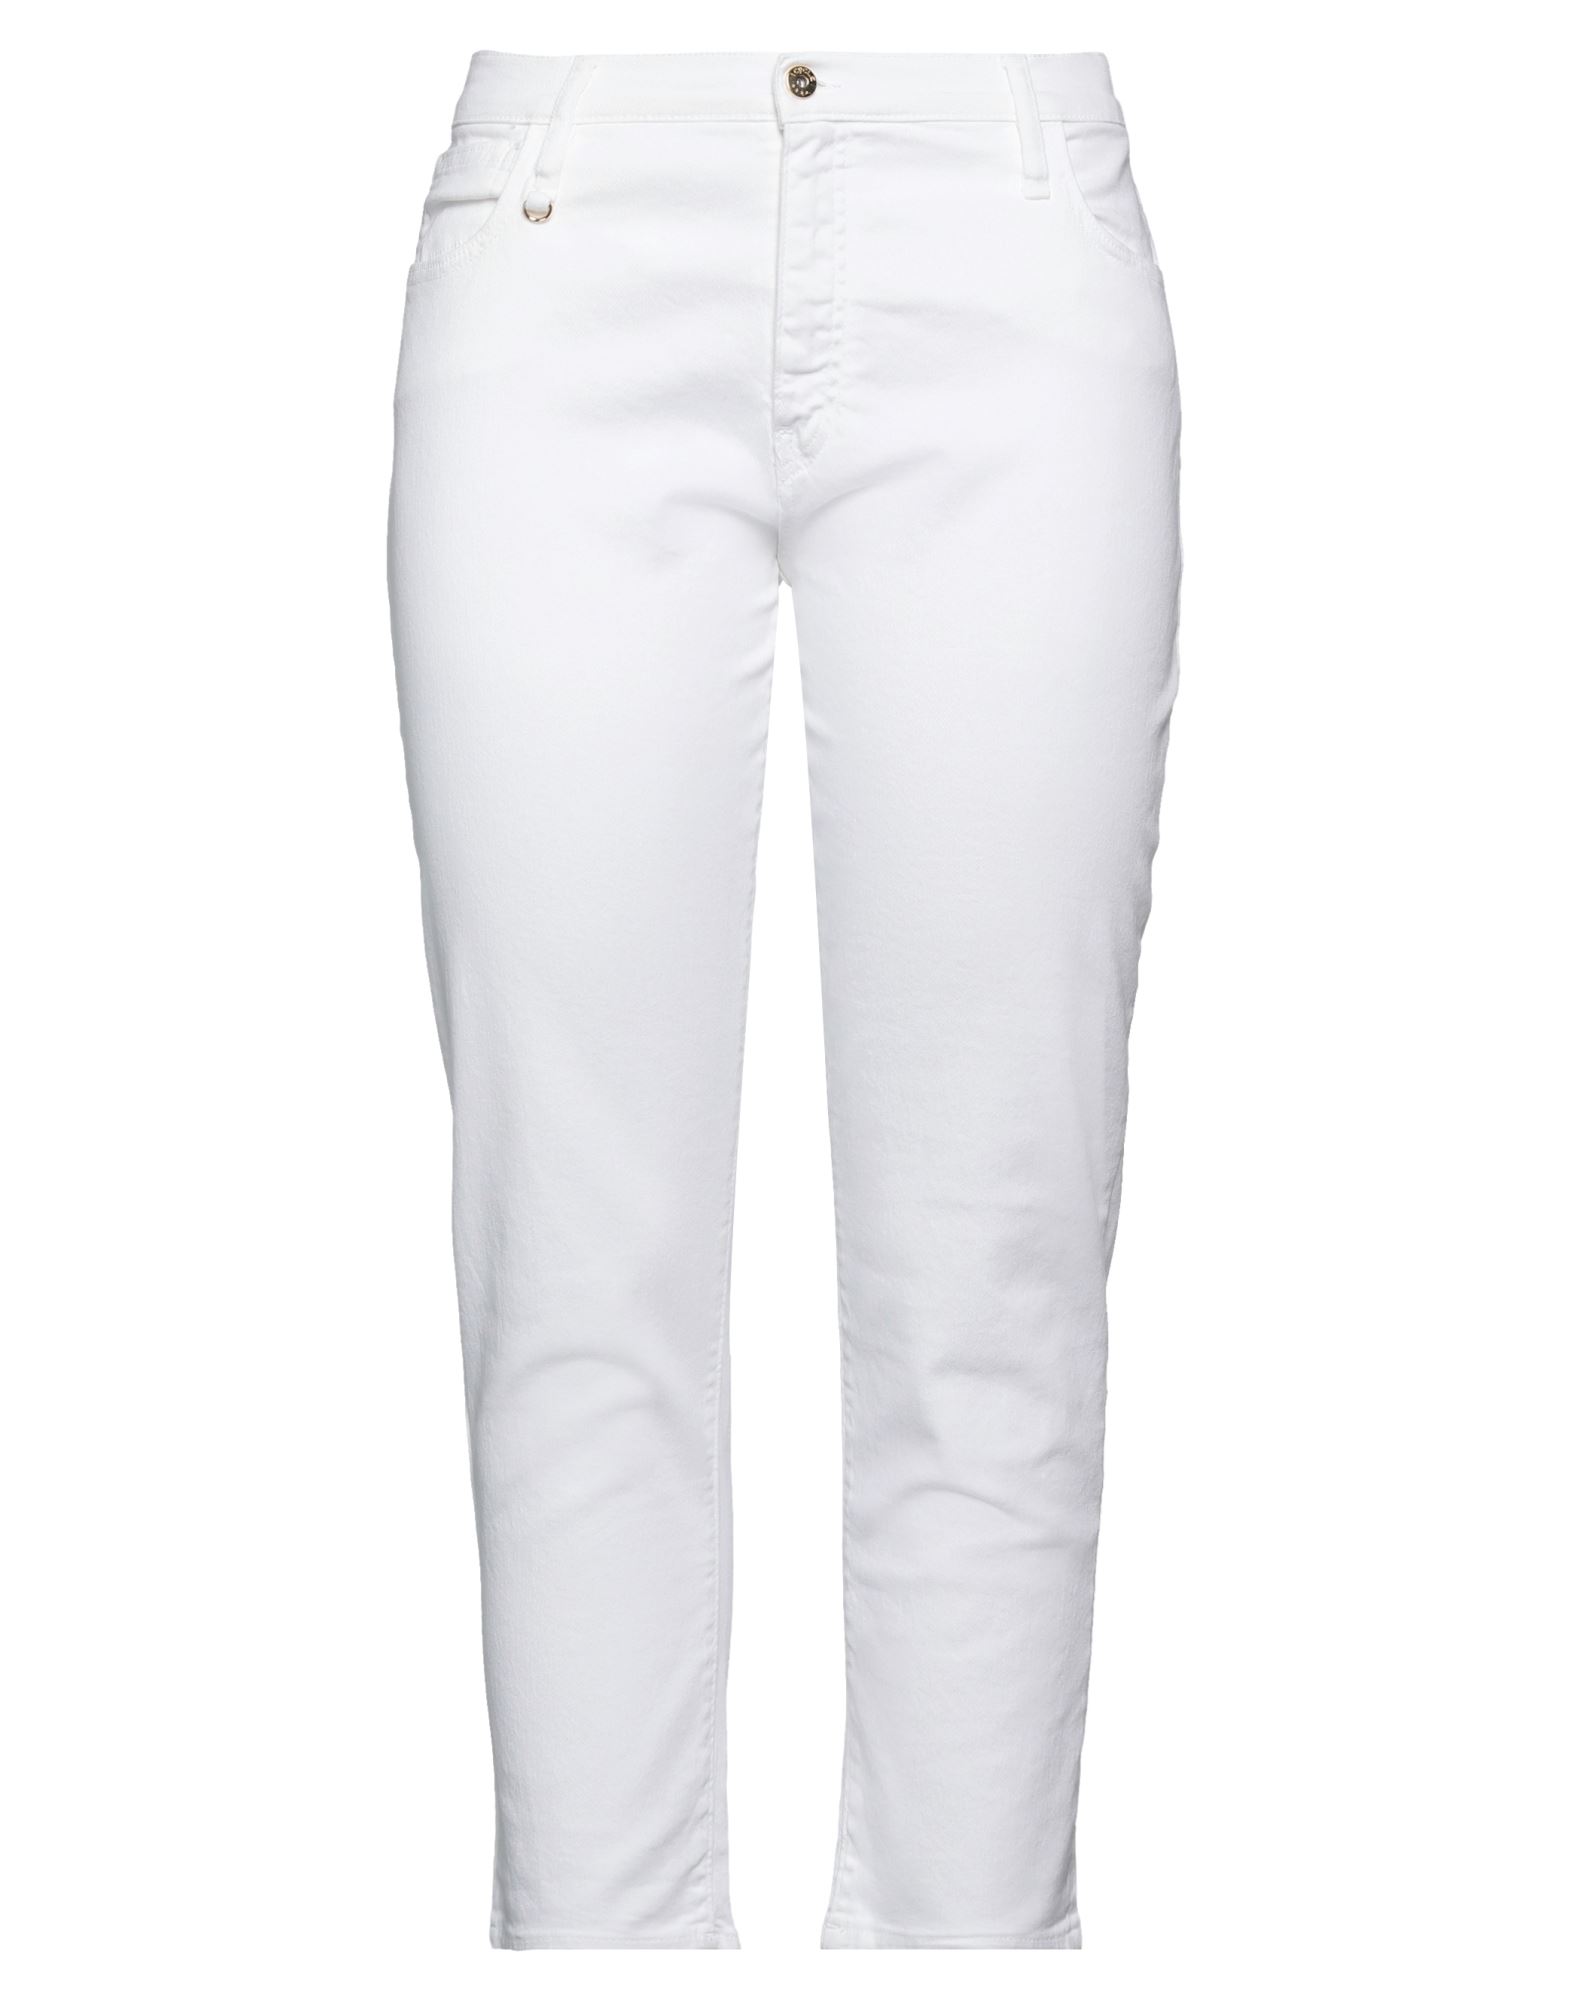 Shop Cycle Woman Jeans White Size 32 Cotton, Elastane